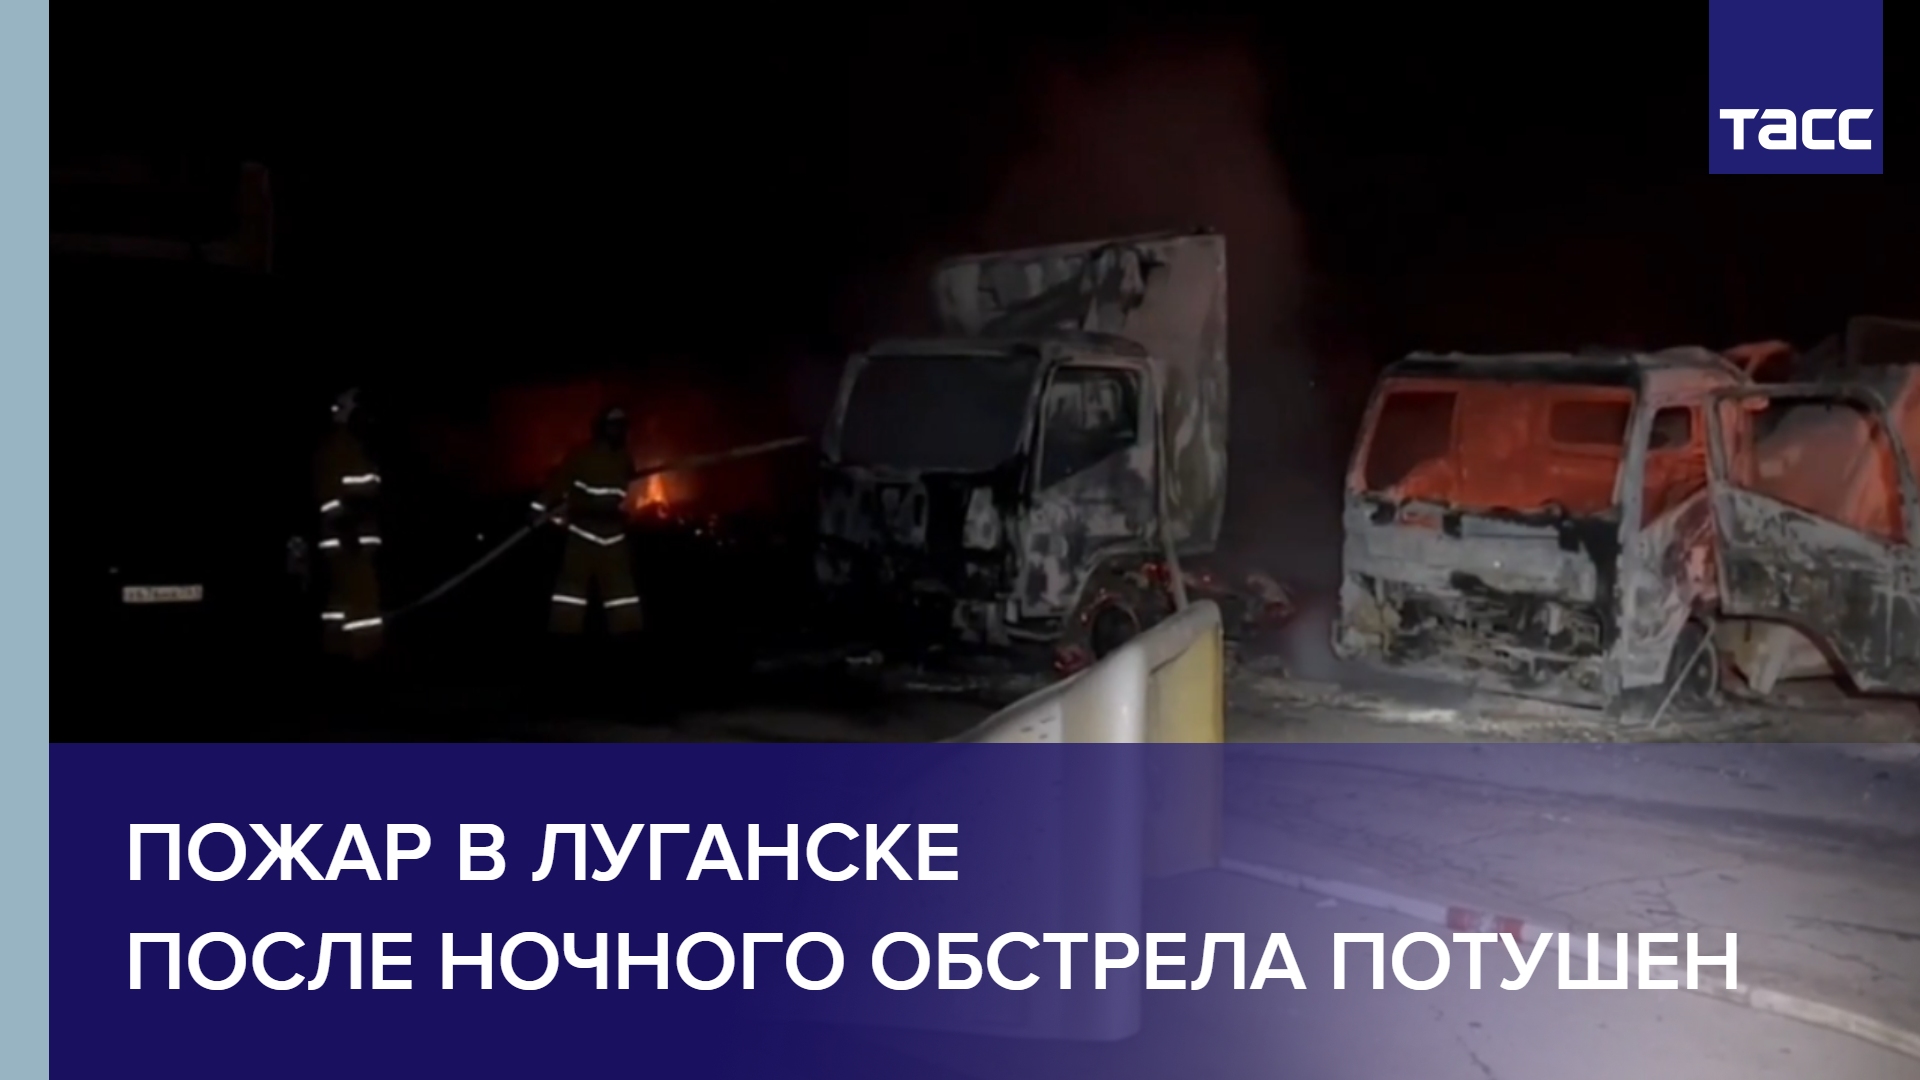 Пожар в Луганске после ночного обстрела потушен